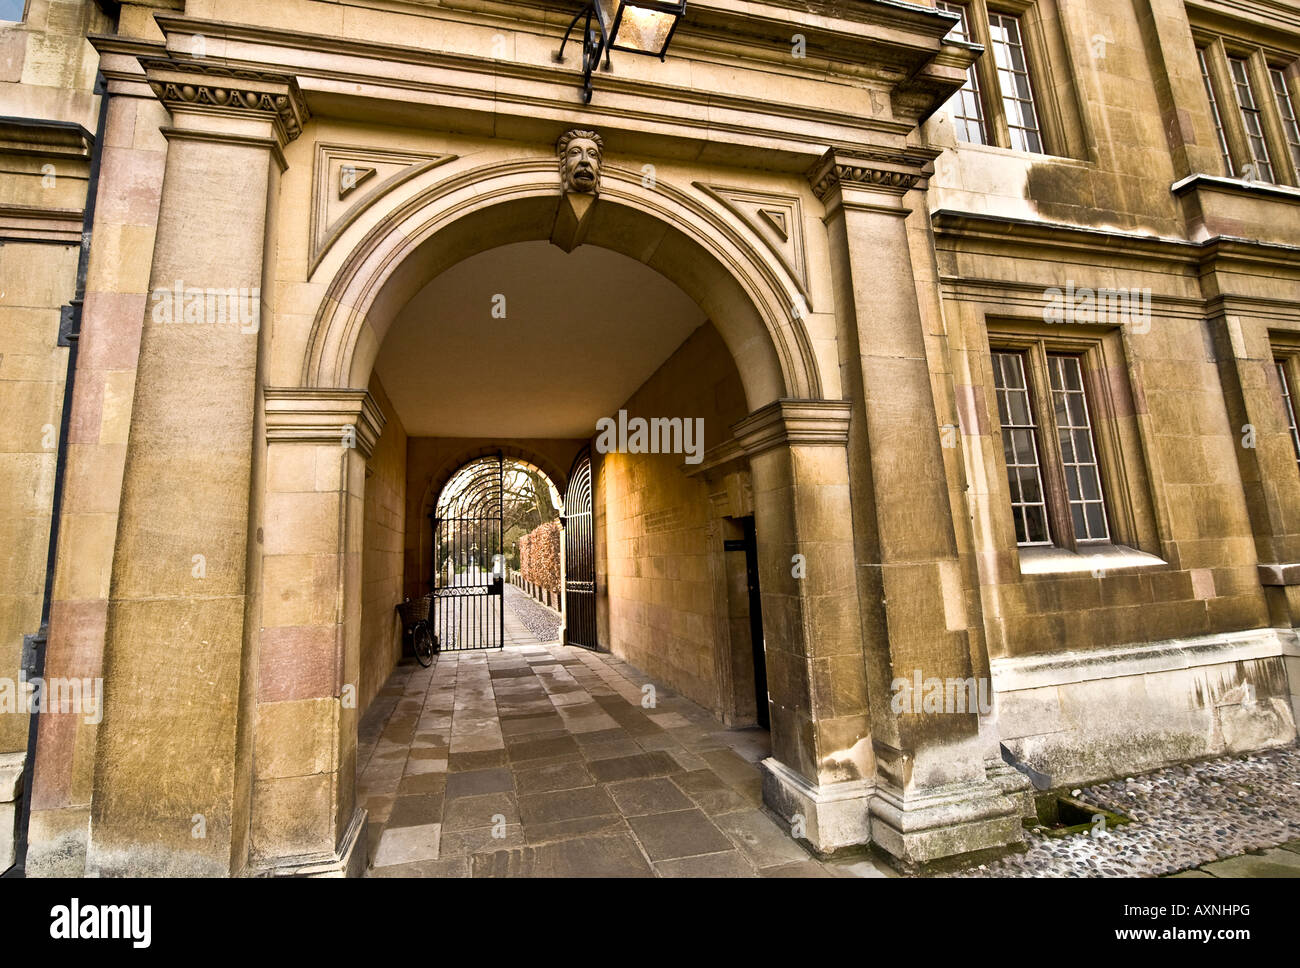 L'université de Cambridge college architecture bâtiment porte piliers en pierre vieux windows historique des bâtiments classés wall background text Banque D'Images